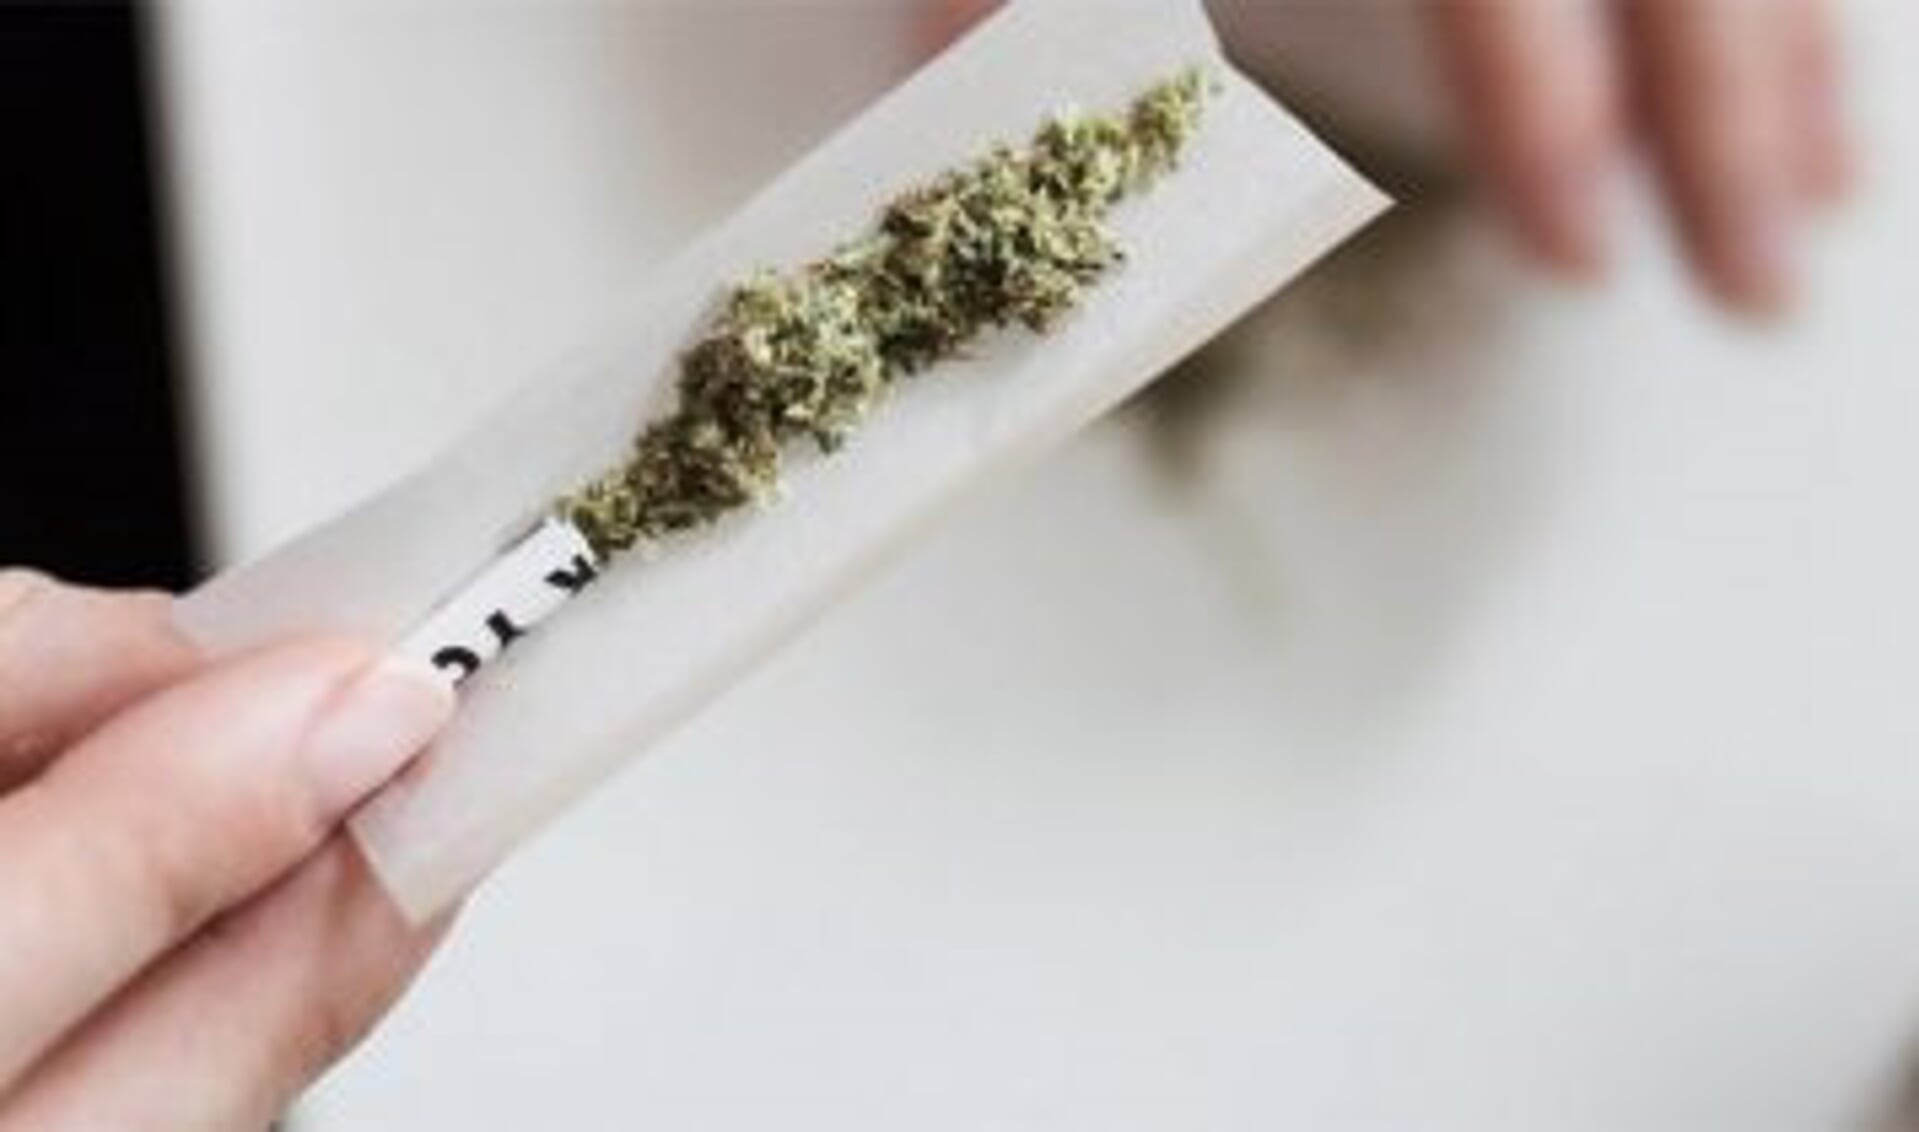 SP en D66 willen thuiskweek gedogen voor mensen die cannabis om gezondheidsredenen gebruiken